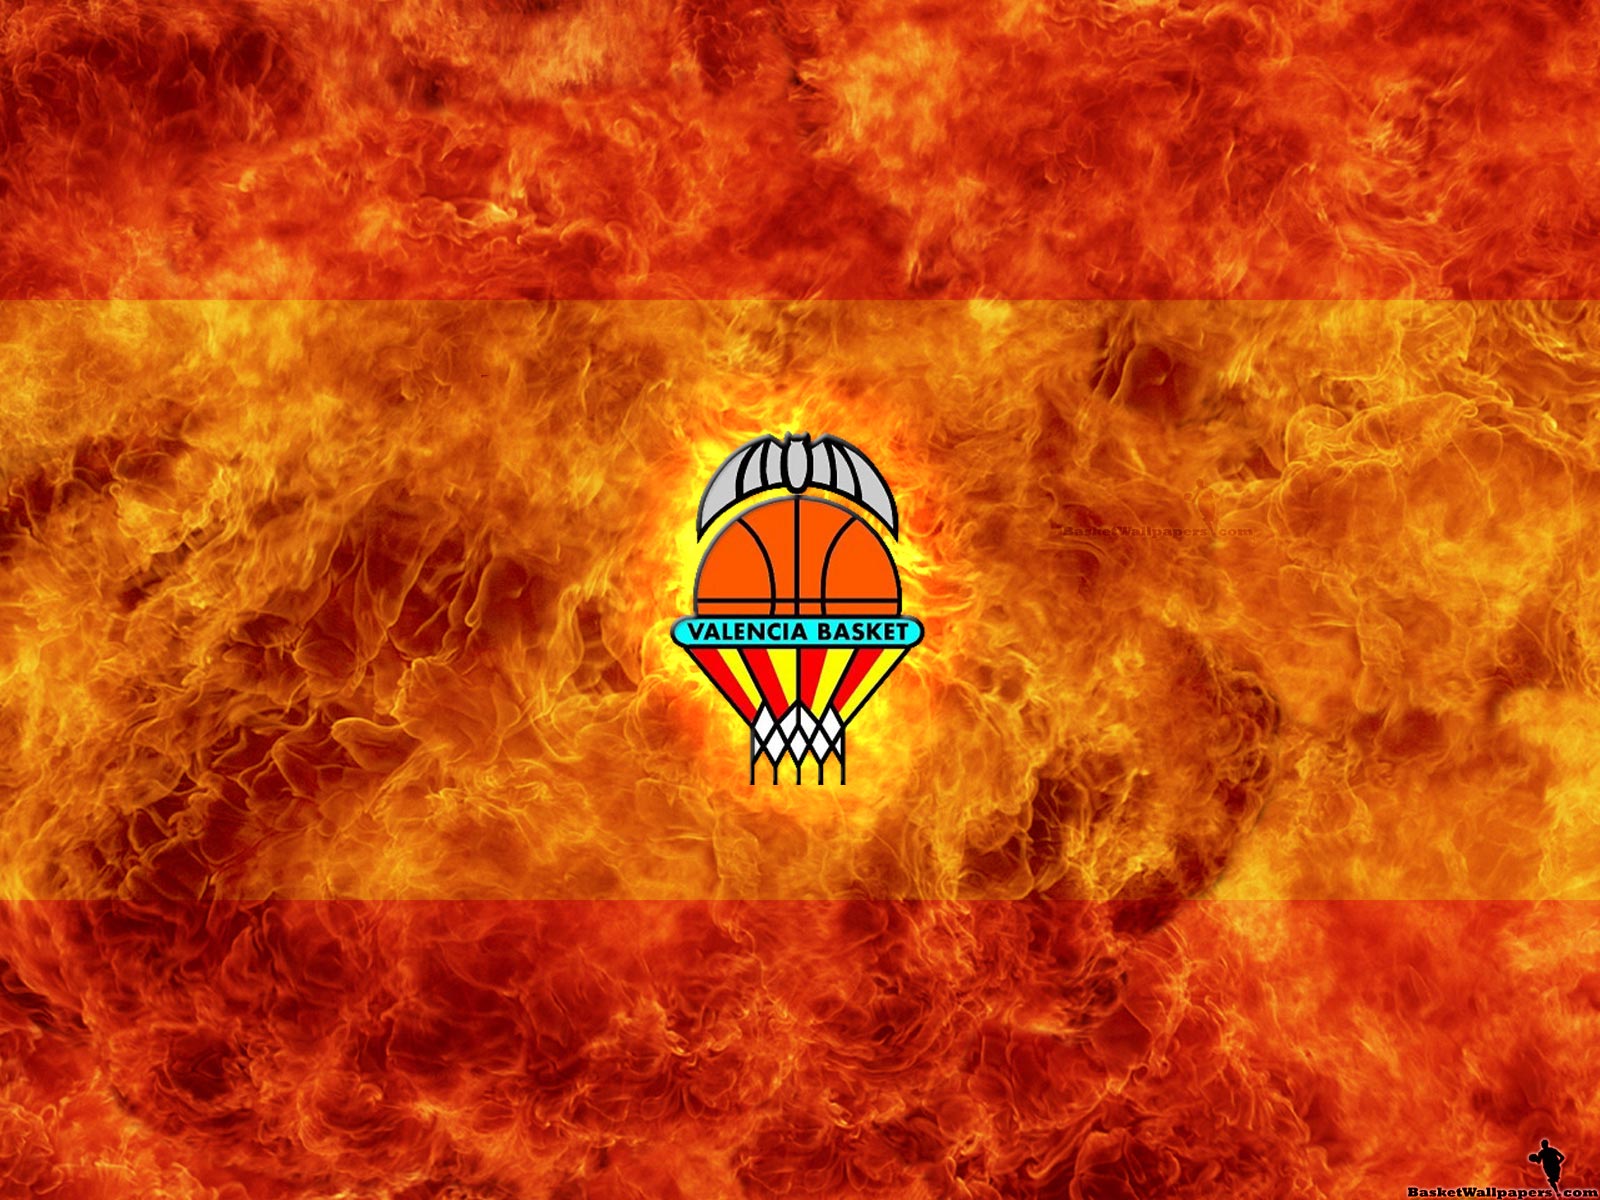 Valencia Basket Club Wallpaper Basketball At